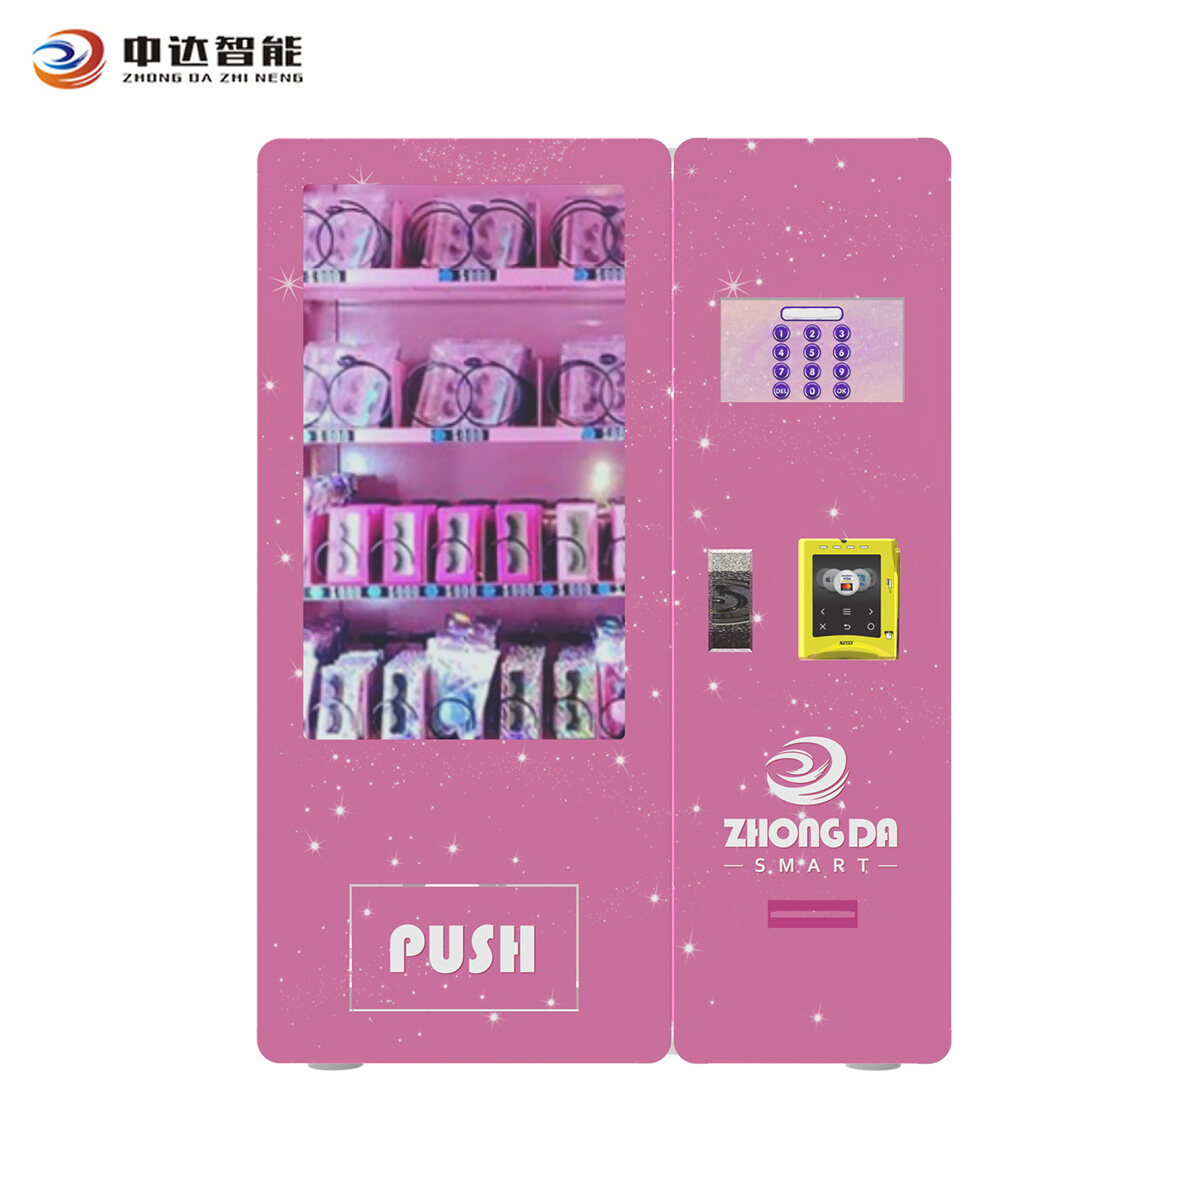 self service vending machine flat vending stickers